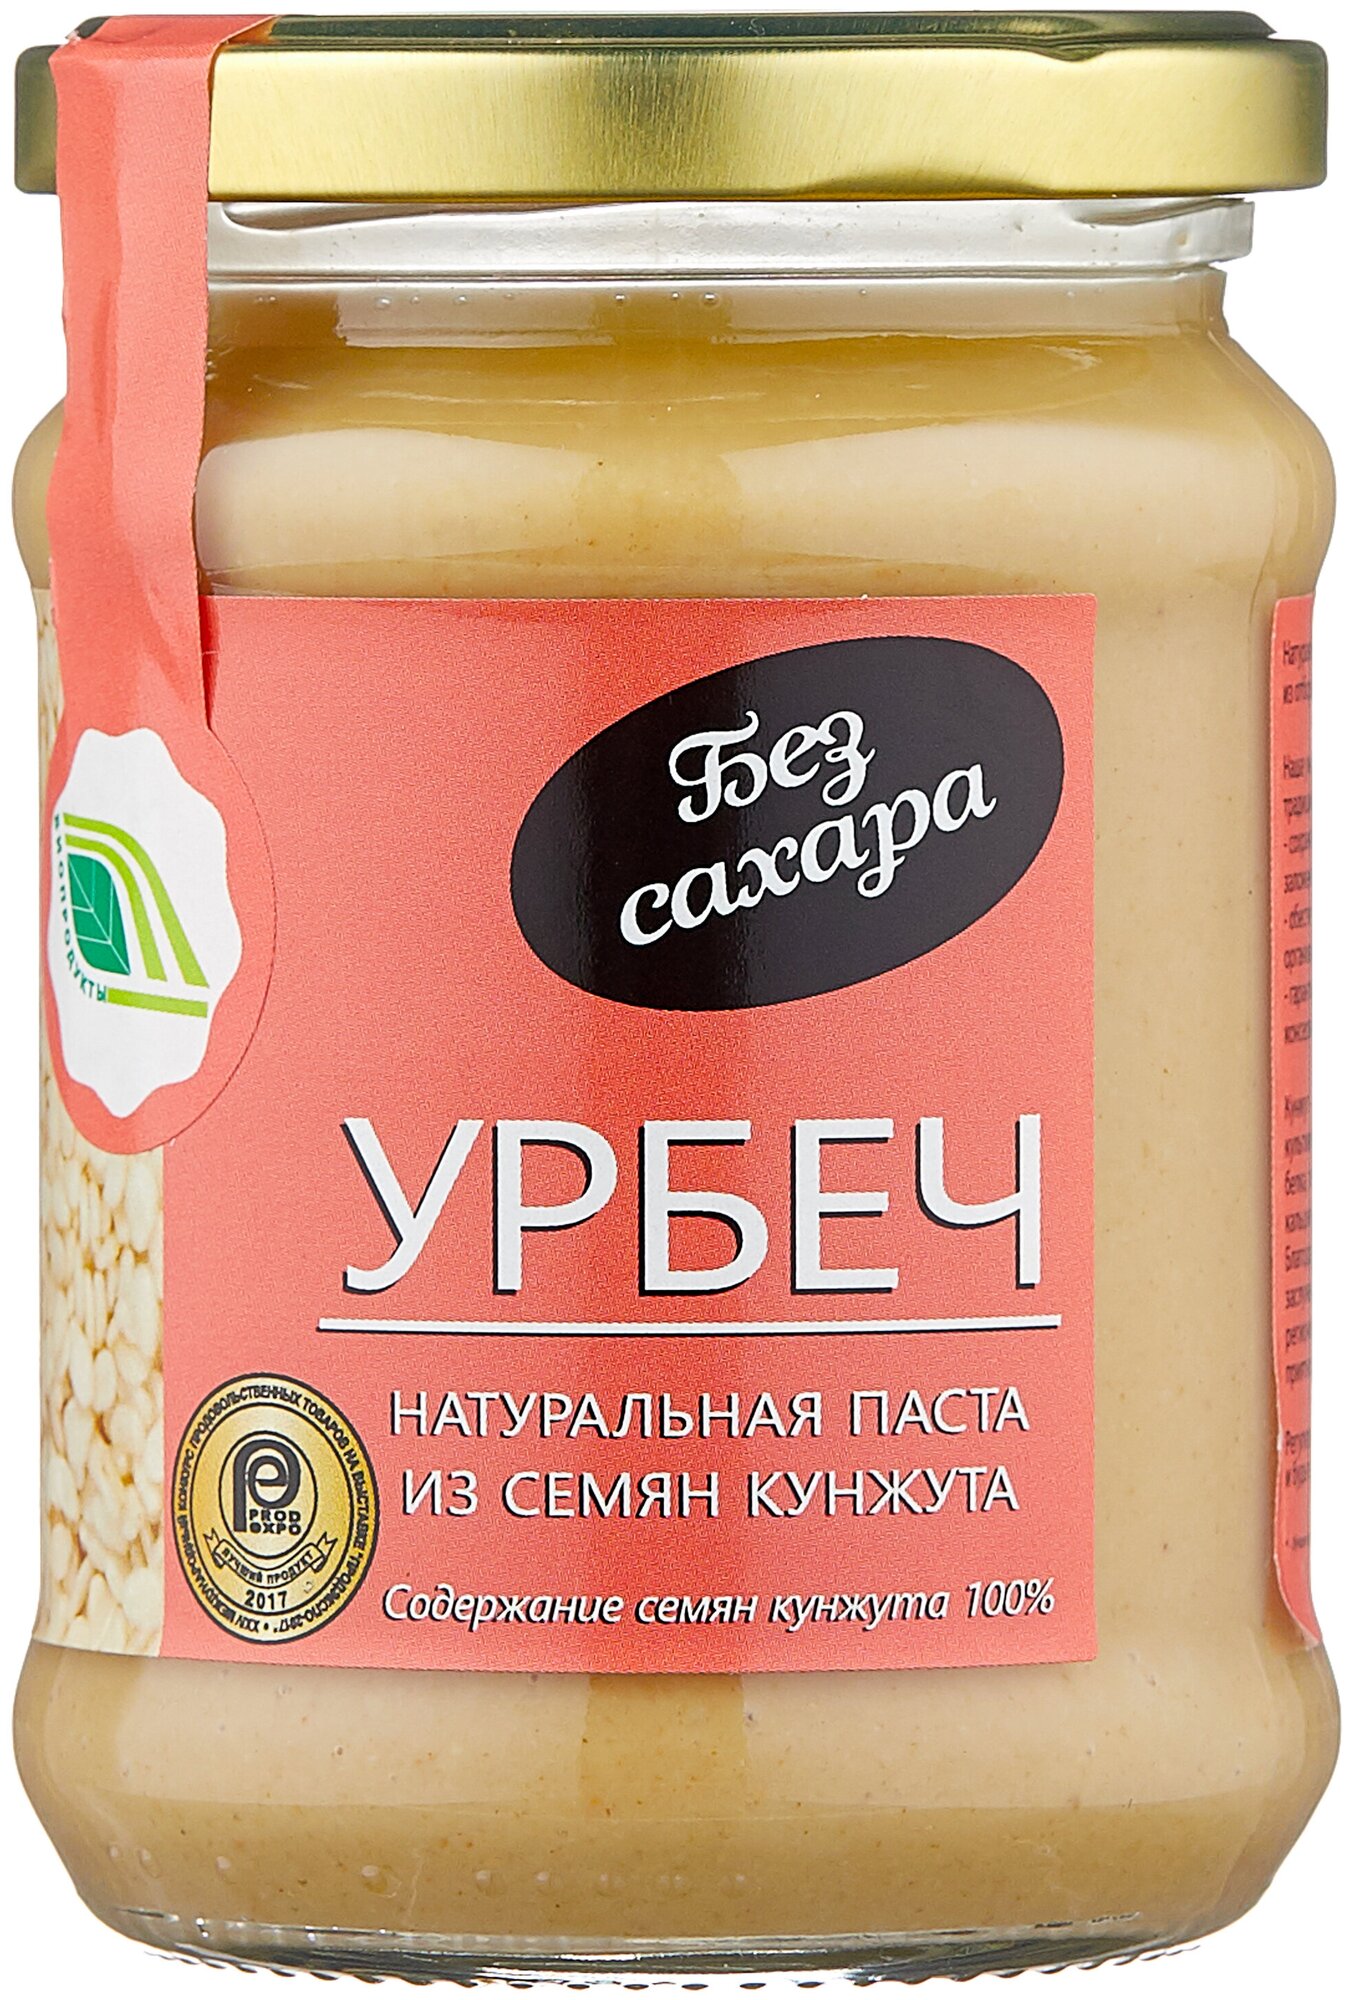 Натуральная паста Урбеч из семян кунжута, 280 гр.